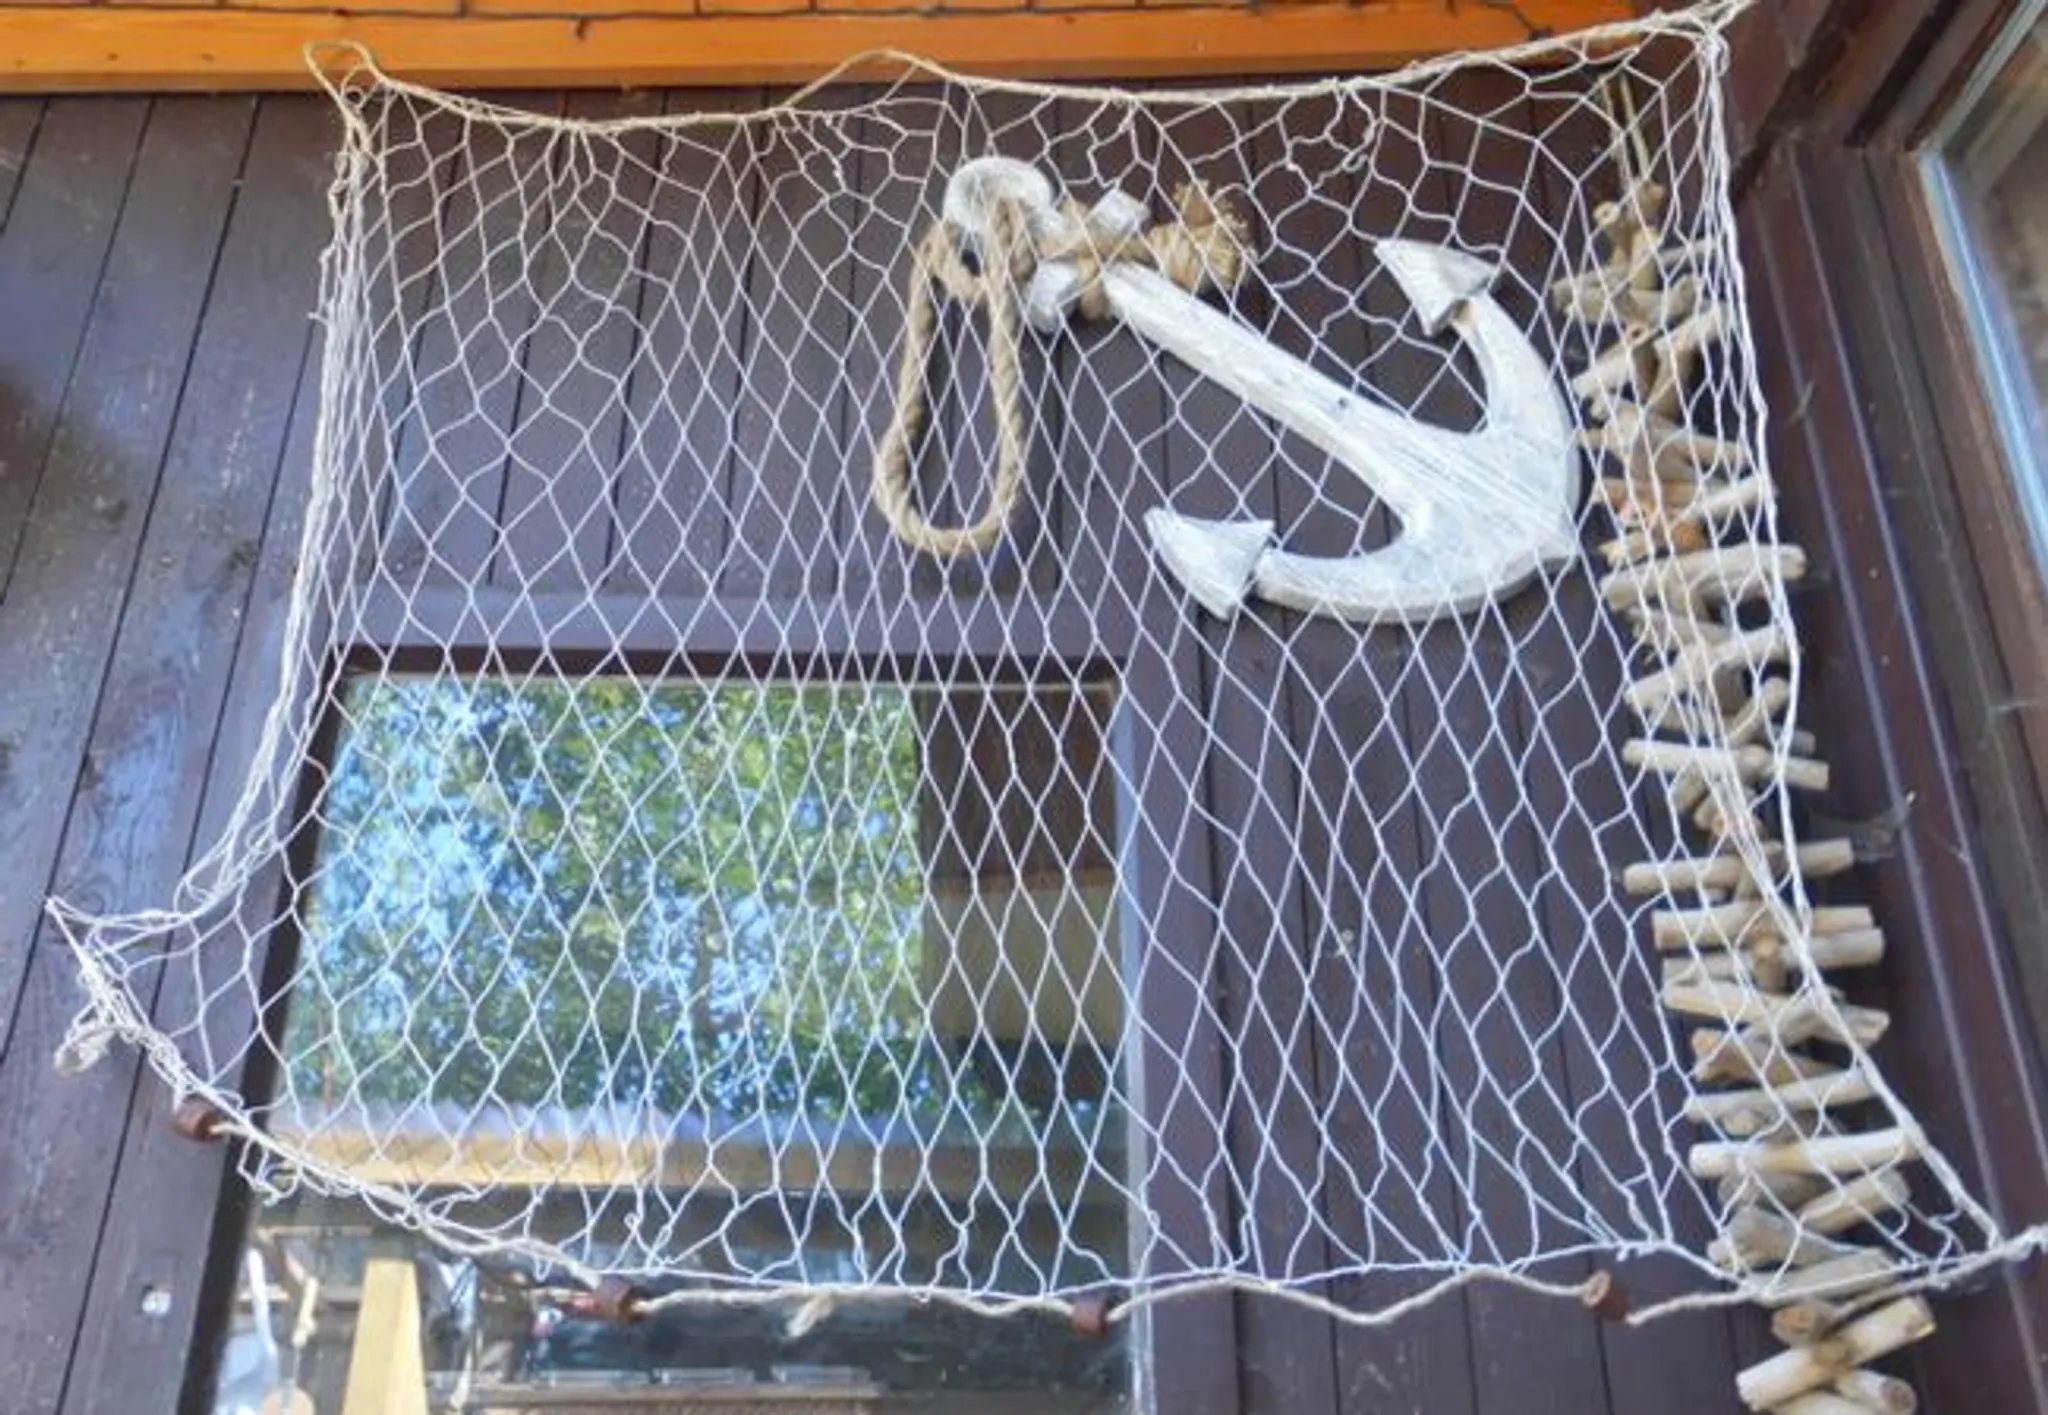 GZHENH Netz Dekor Netz Fischnetzwand ， Dekoratives Netz Retro Sicheres Netz Handgewebt Innen Color : Beige-15cm, Size : 4x8m Anpassbar Zusammenklappbar 